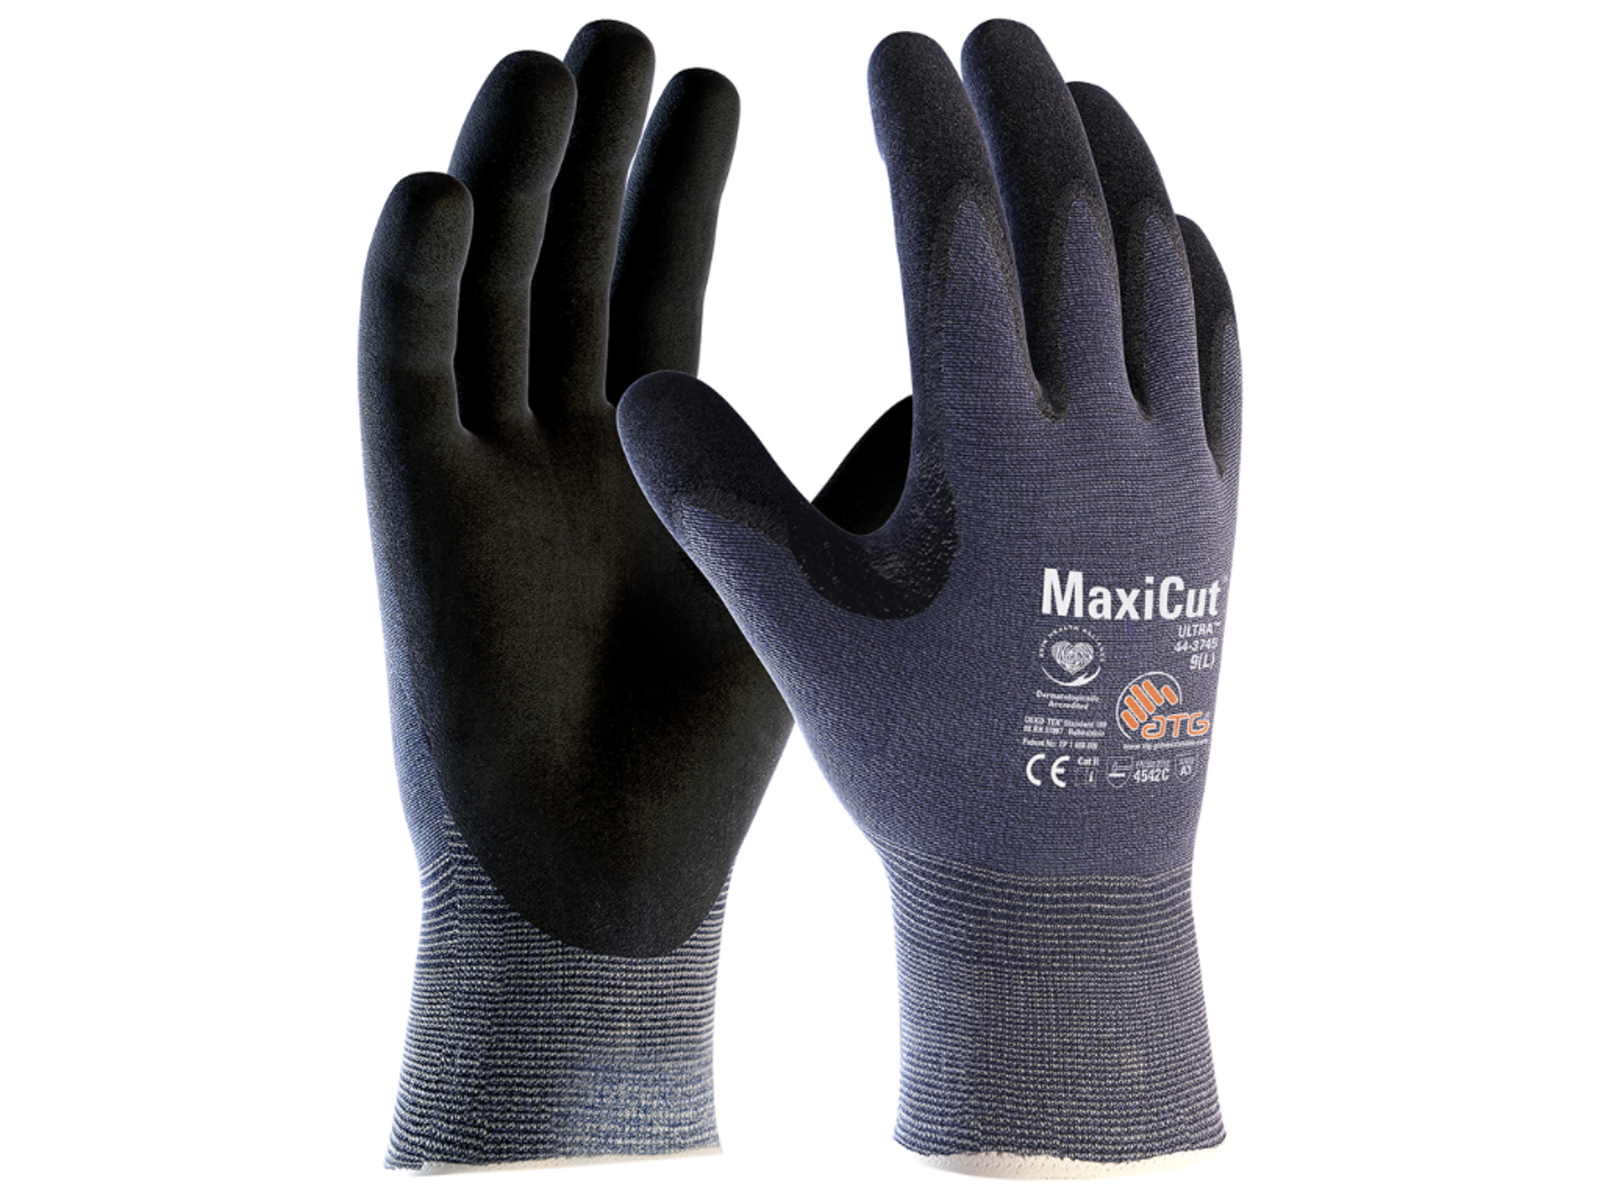 Protiporézne rukavice ATG MaxiCut Ultra 44-3745 - veľkosť: 8/M, farba: modrá